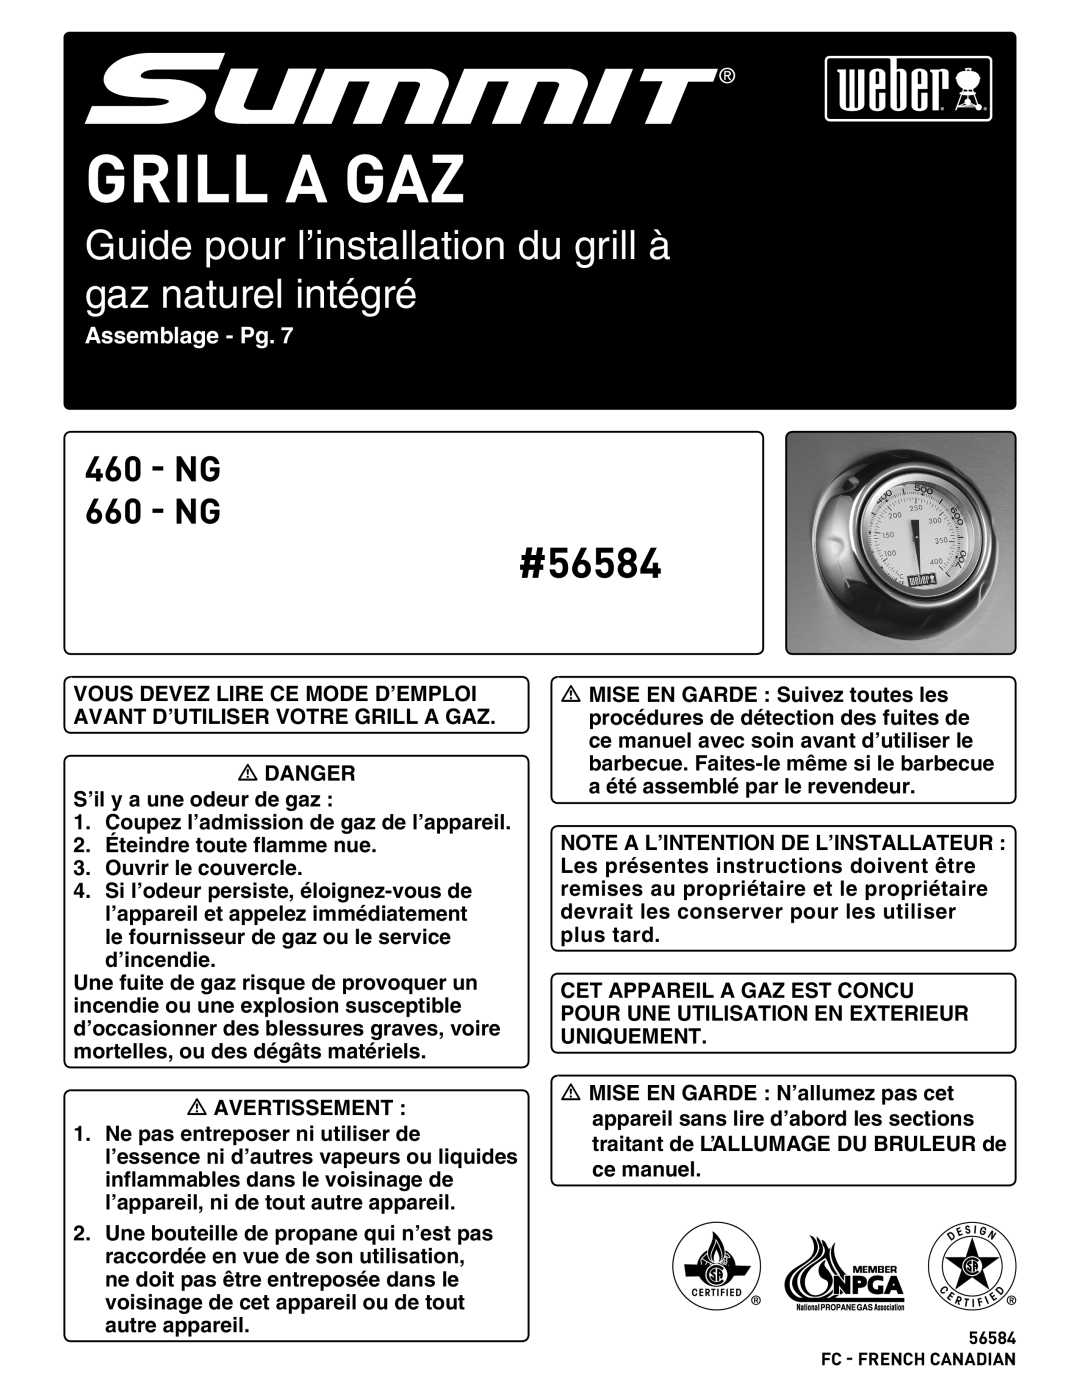 Weber 56576 Guide pour l’installation du grill à gaz naturel intégré, Assemblage - Pg, Grill A Gaz, #56584, NG 660 - NG 